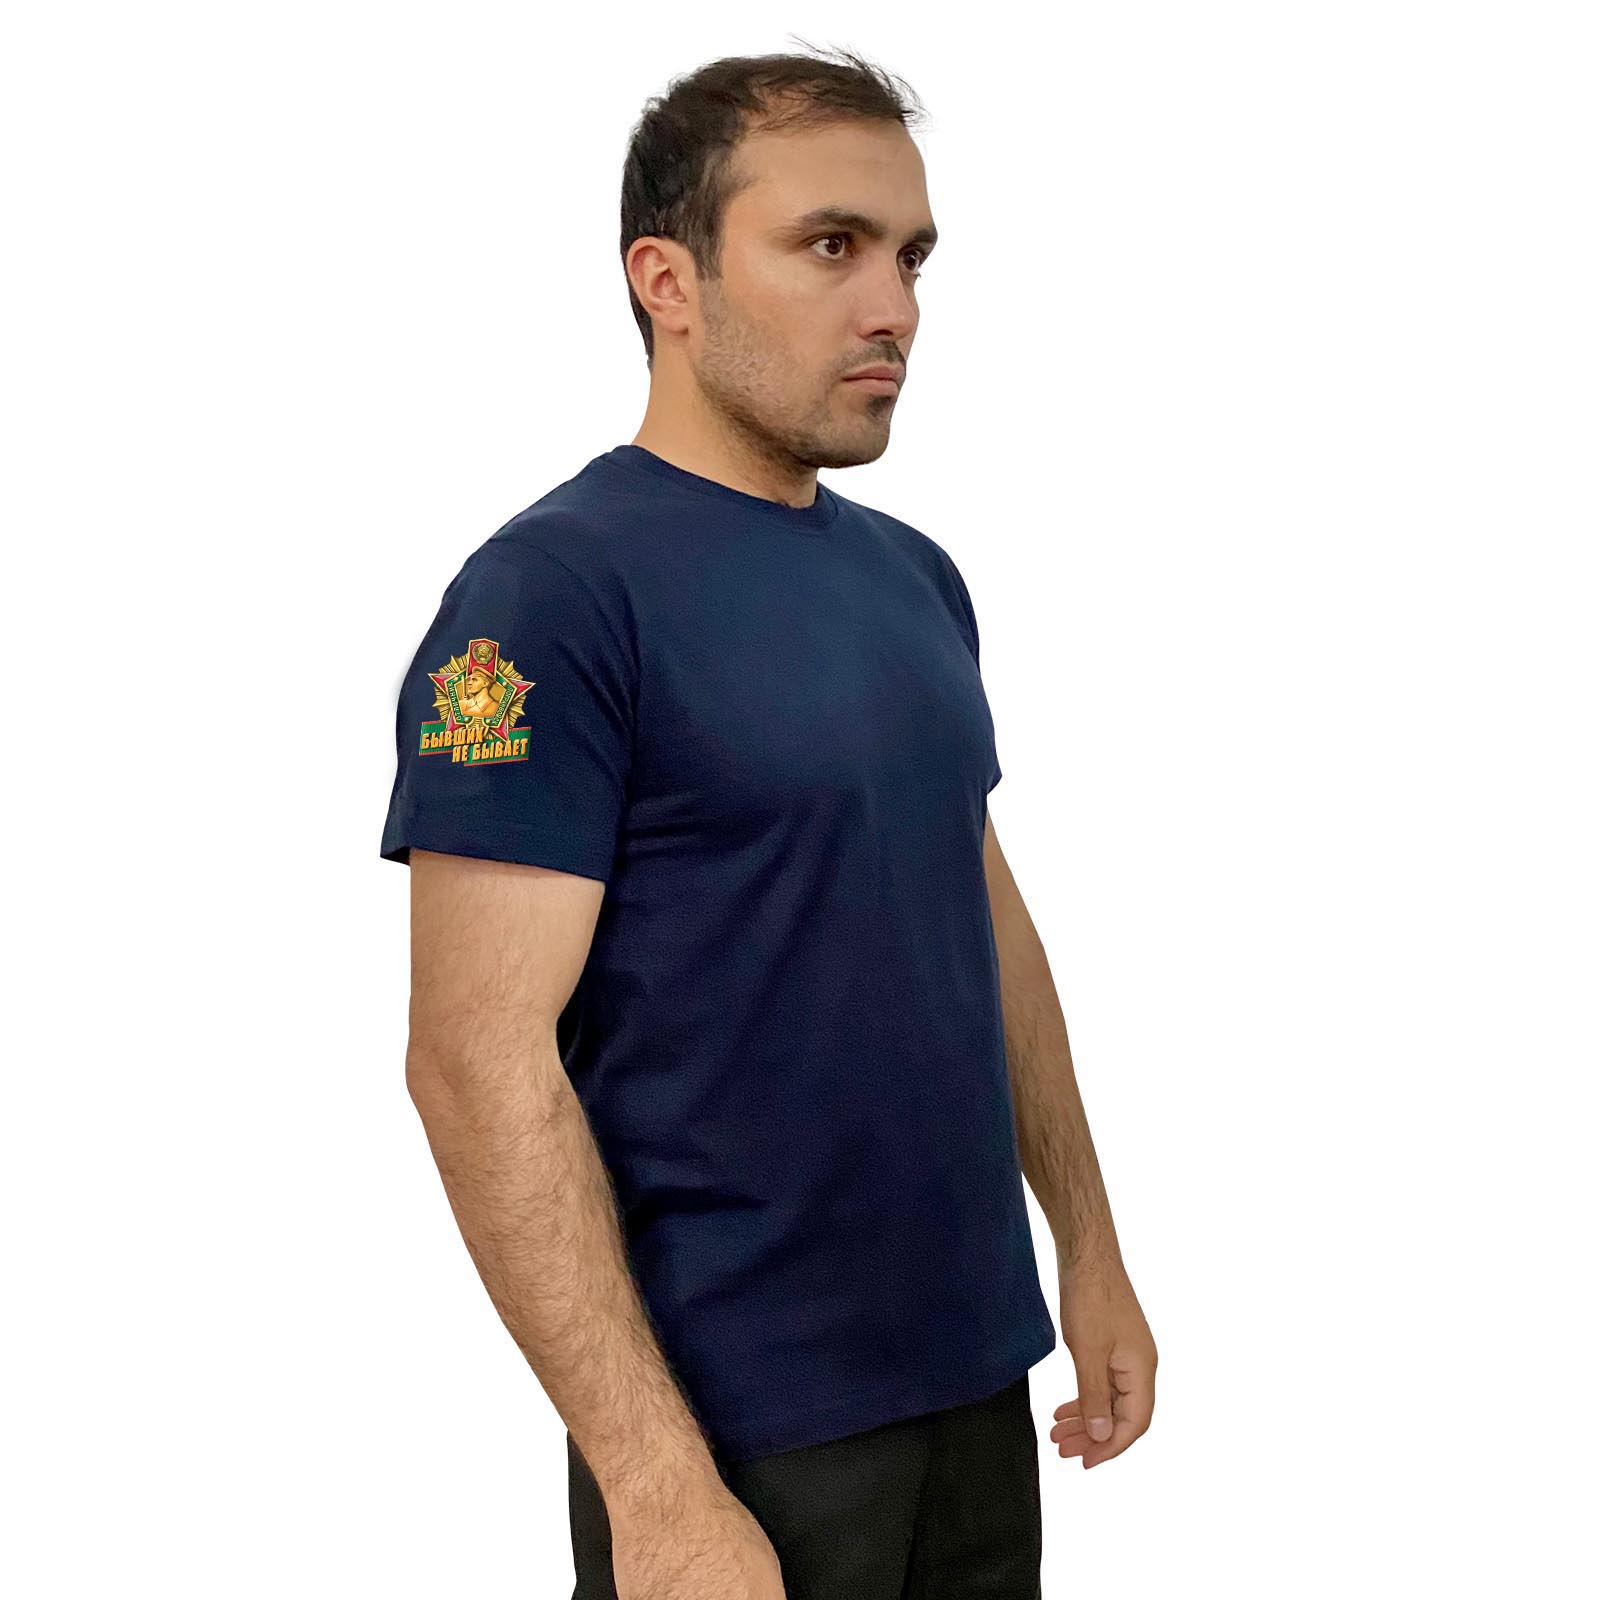 Тёмно-синяя футболка с трансфером "Бывших пограничников не бывает" на рукаве